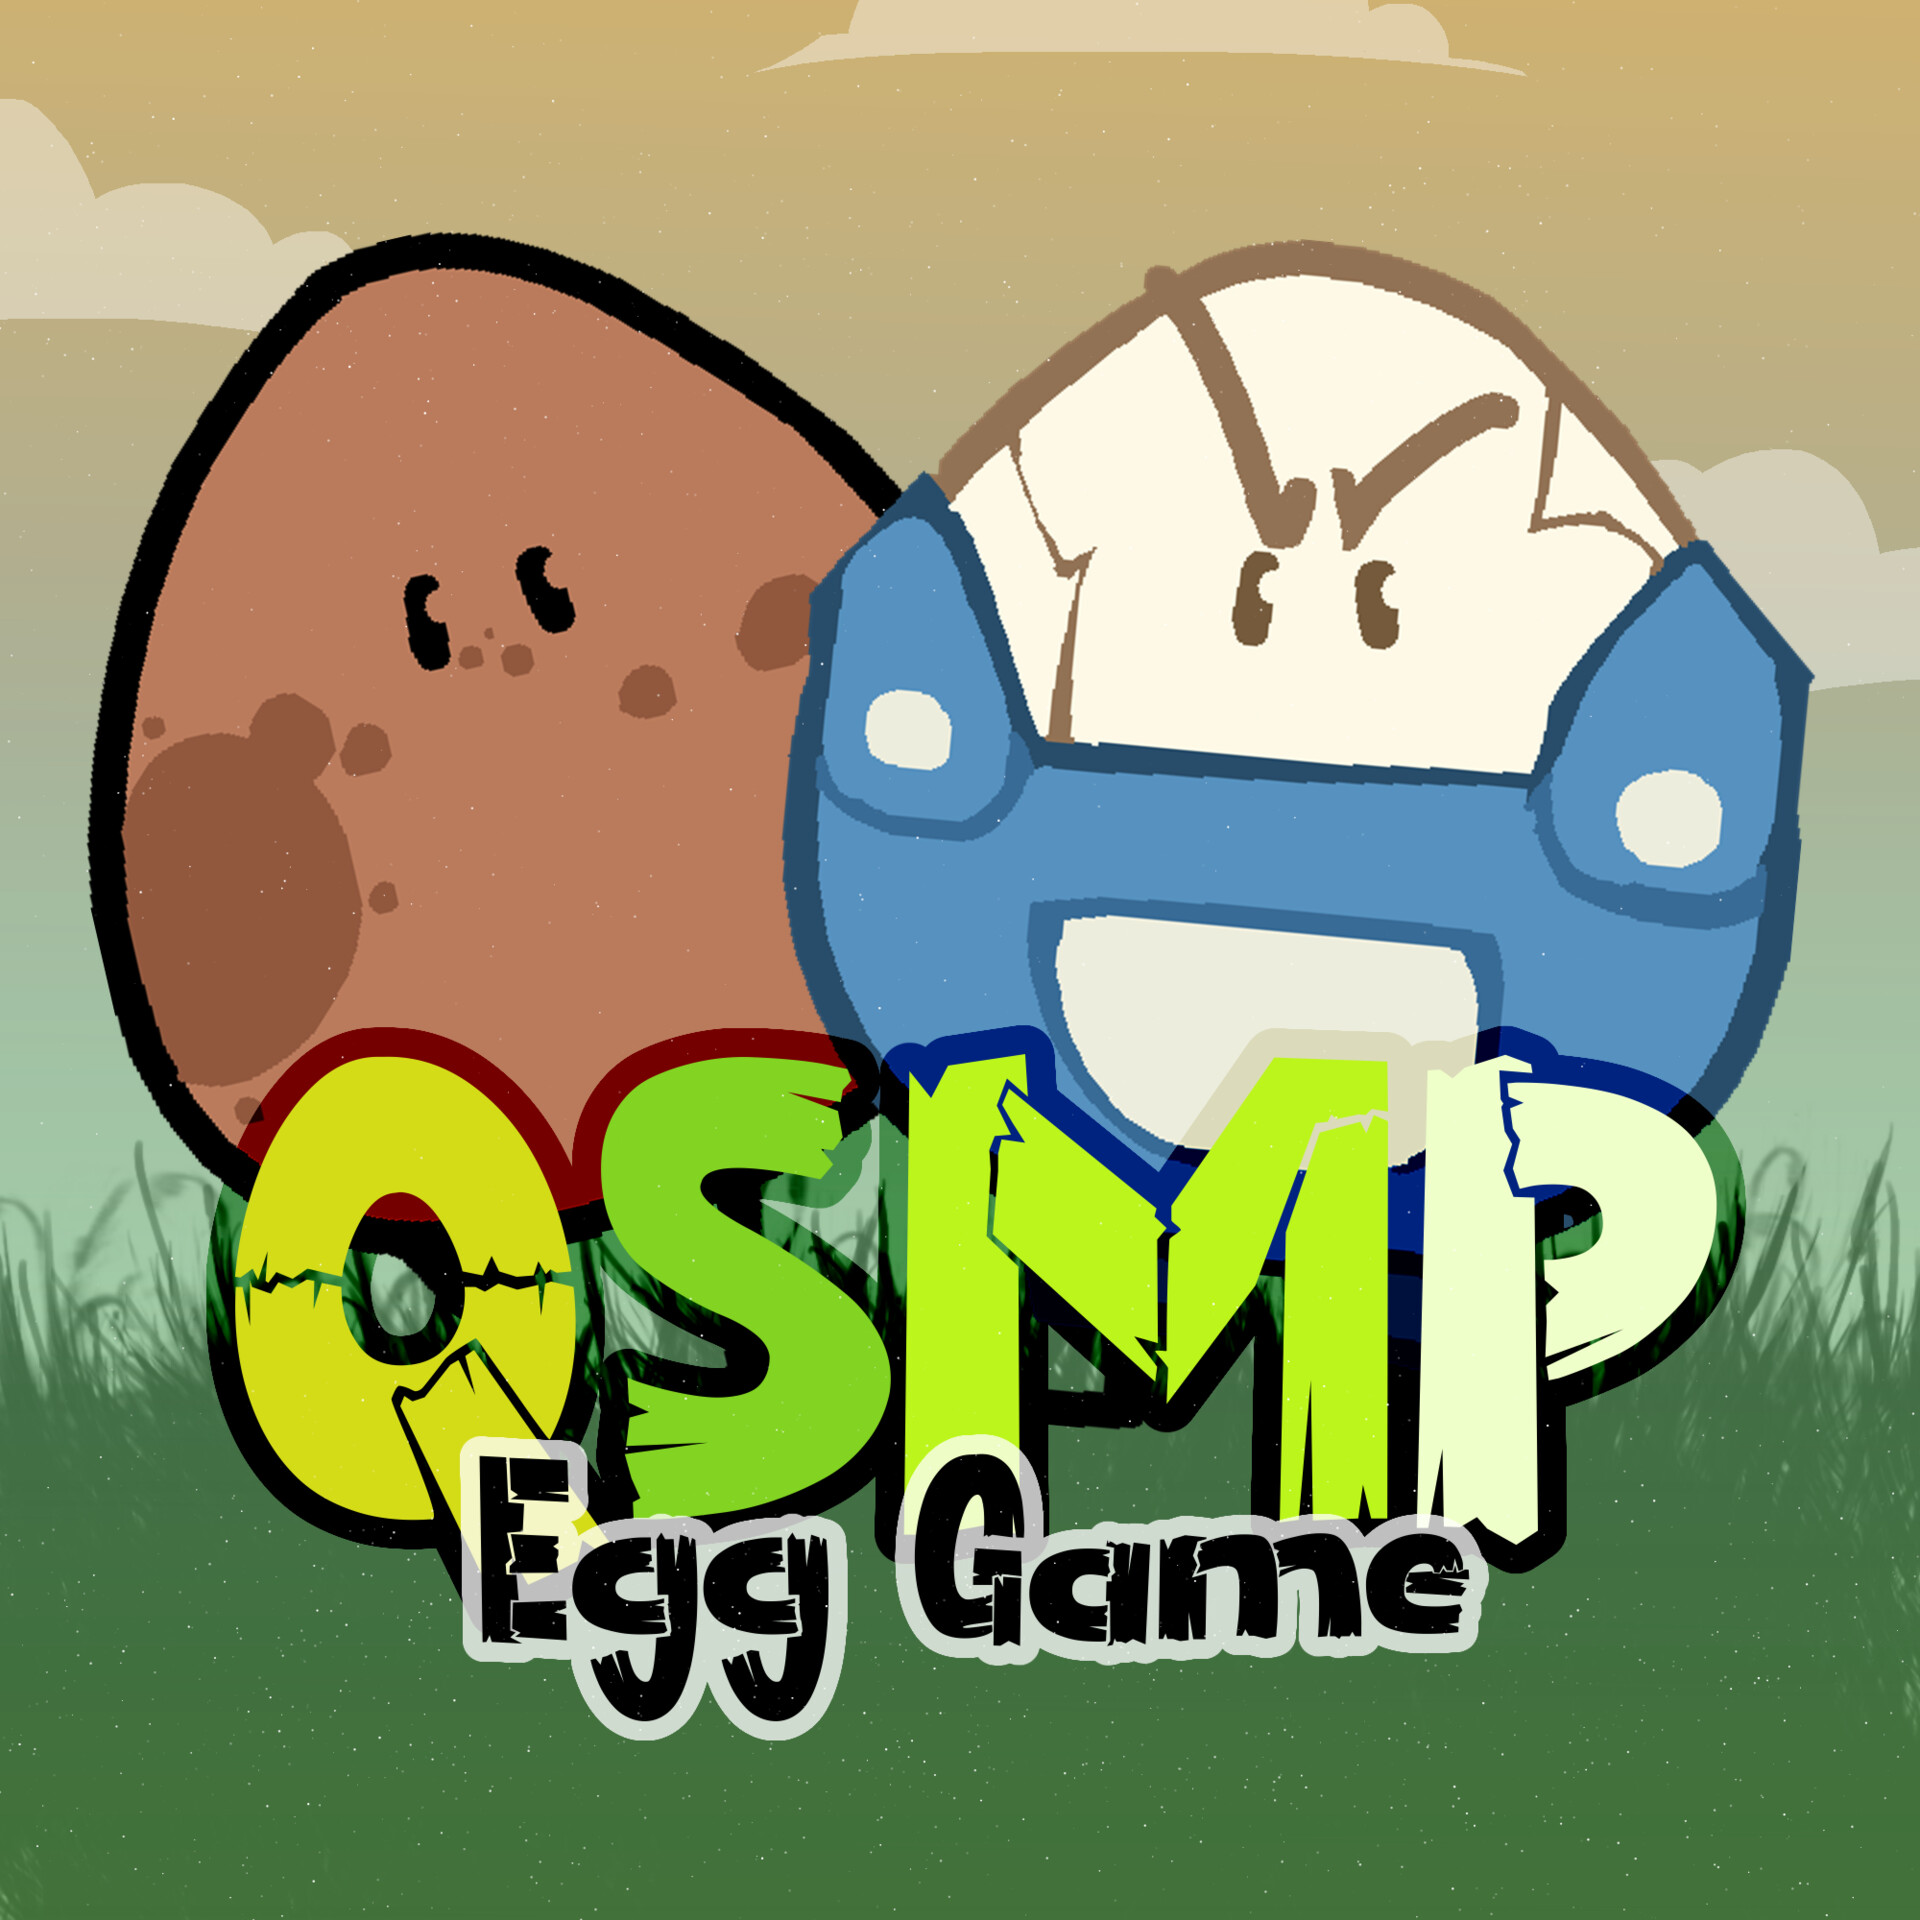 no more eggs ?? : r/Qsmp